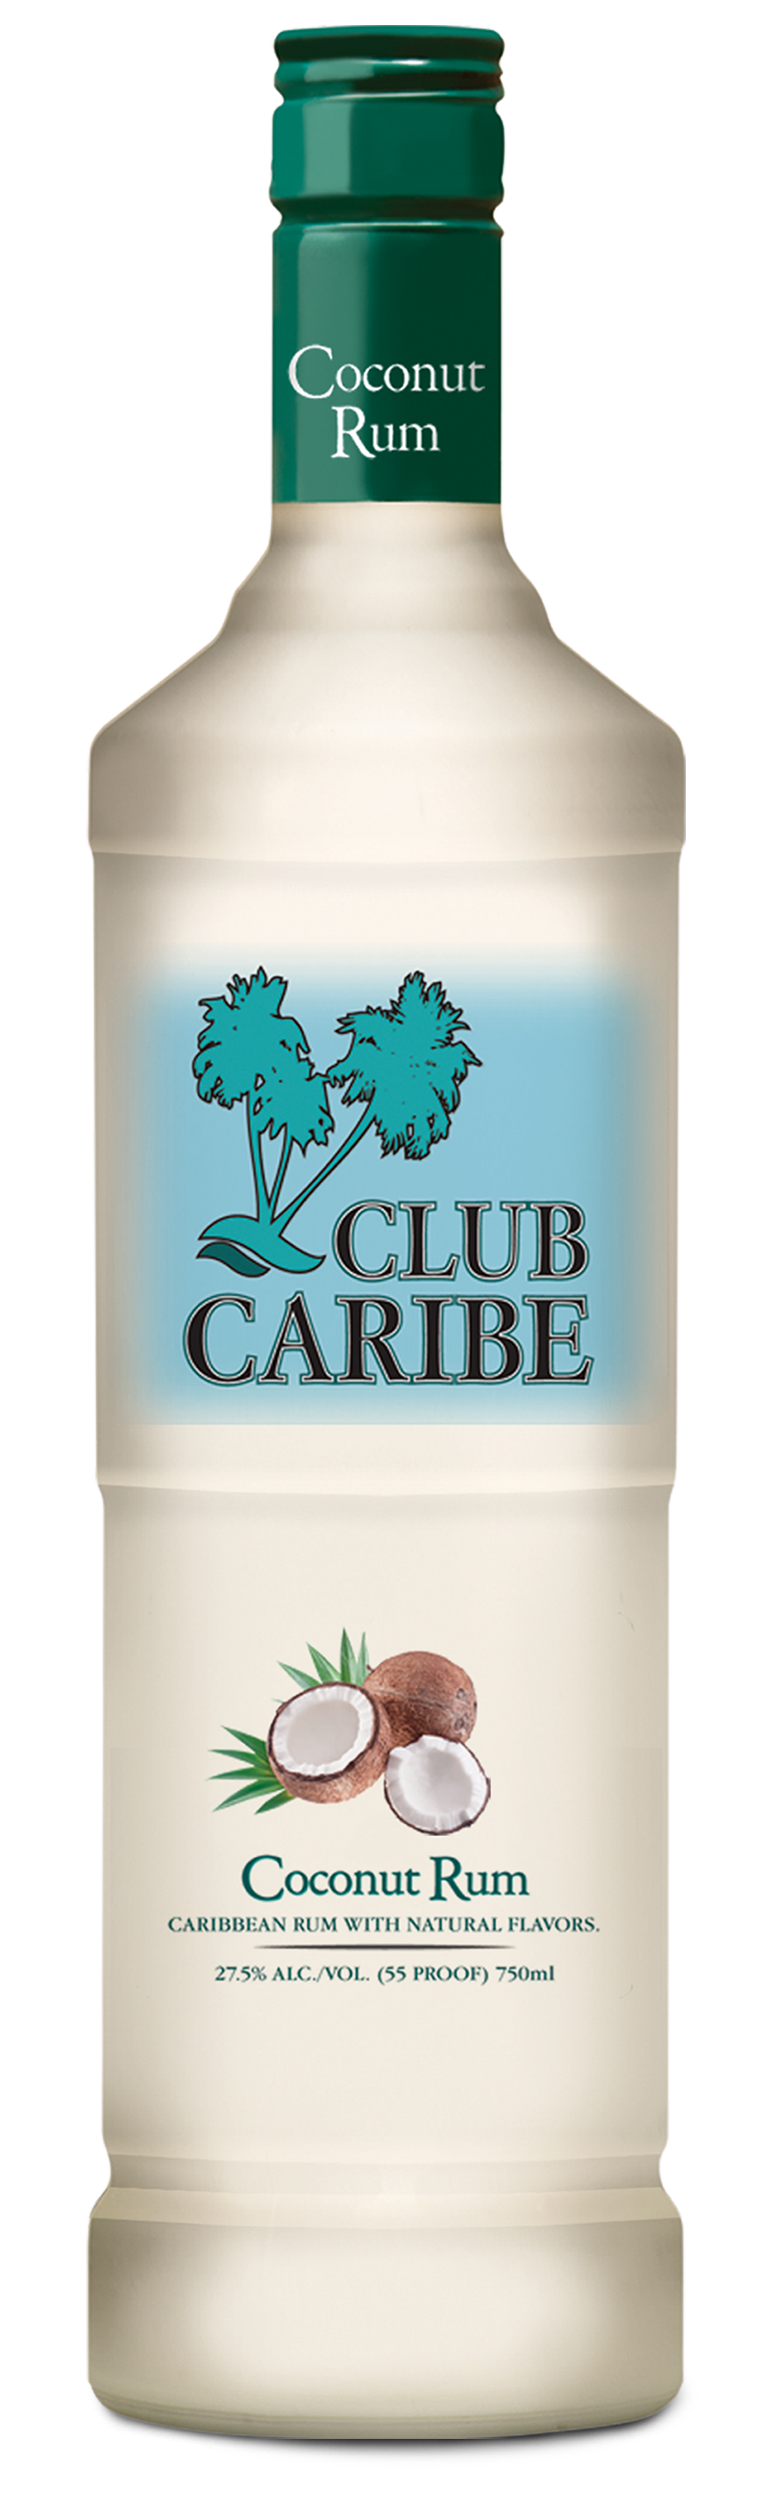 Club Caribe Coconut Rum